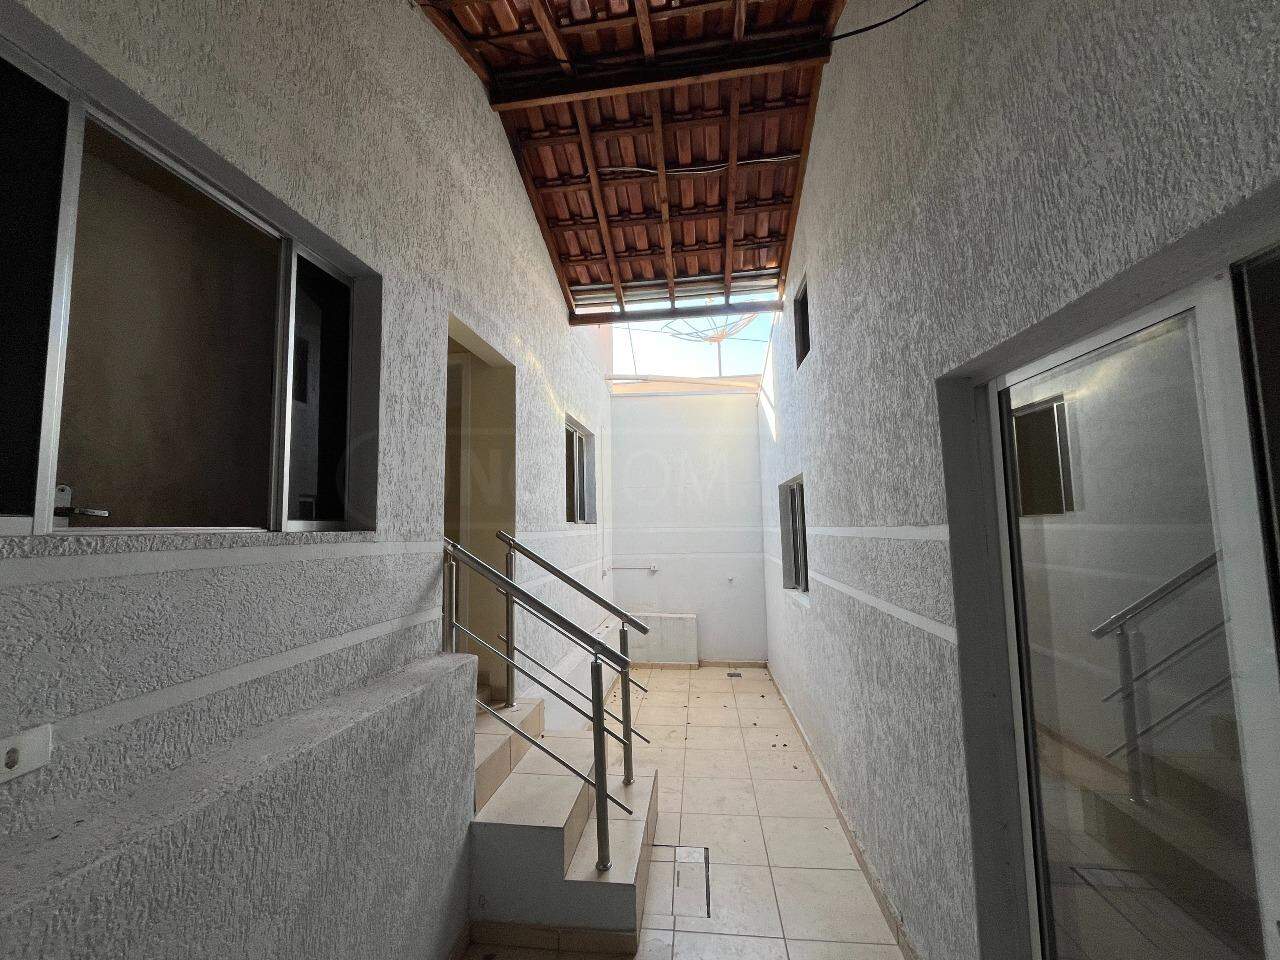 Casa à venda, 3 quartos, sendo 1 suíte, 2 vagas, no bairro Jardim Brasília em Piracicaba - SP